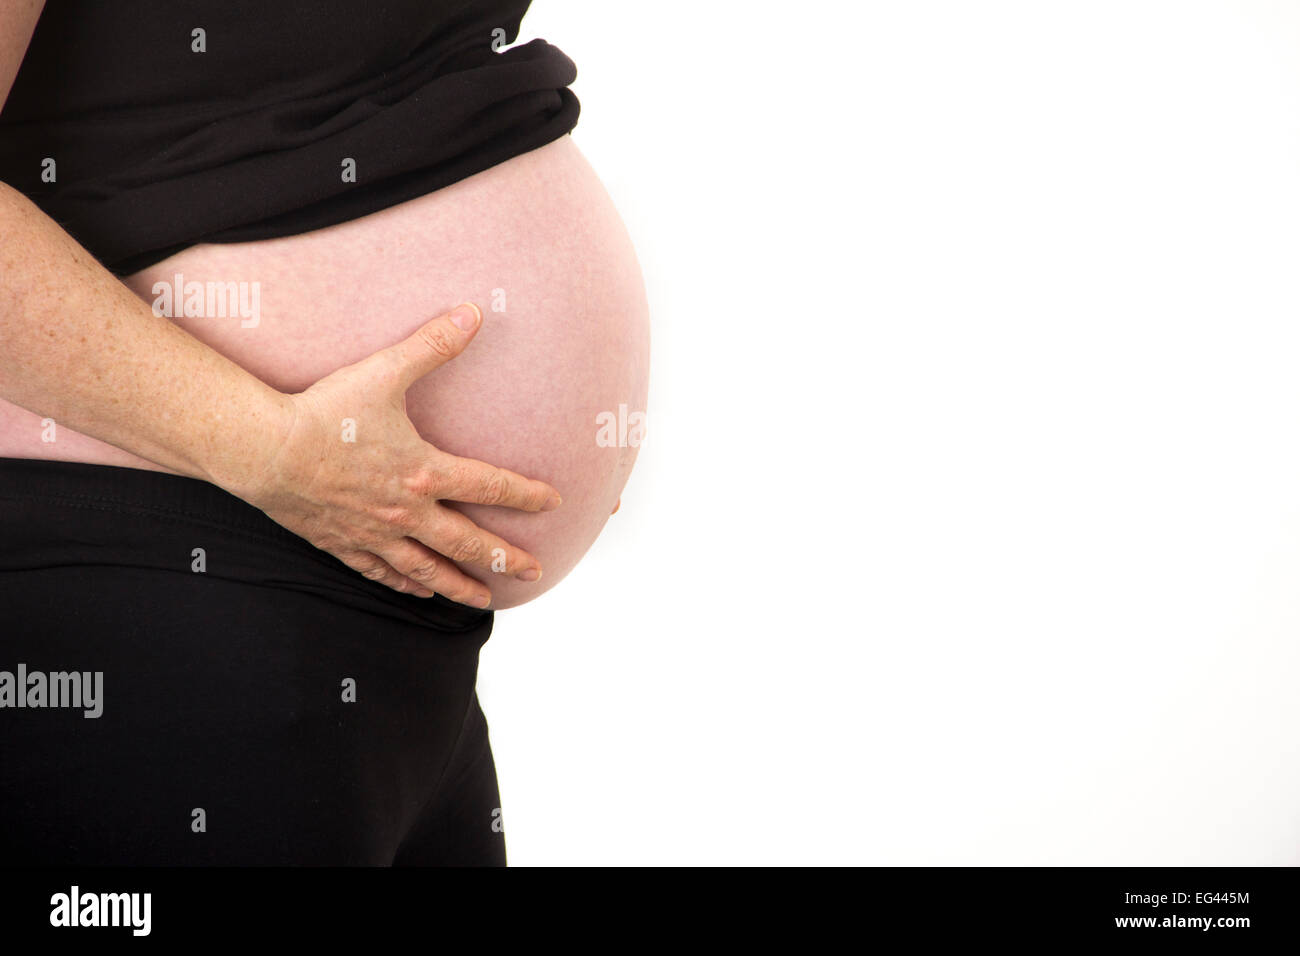 Ventre de femme enceinte photo stock. Image du ventre - 37406898